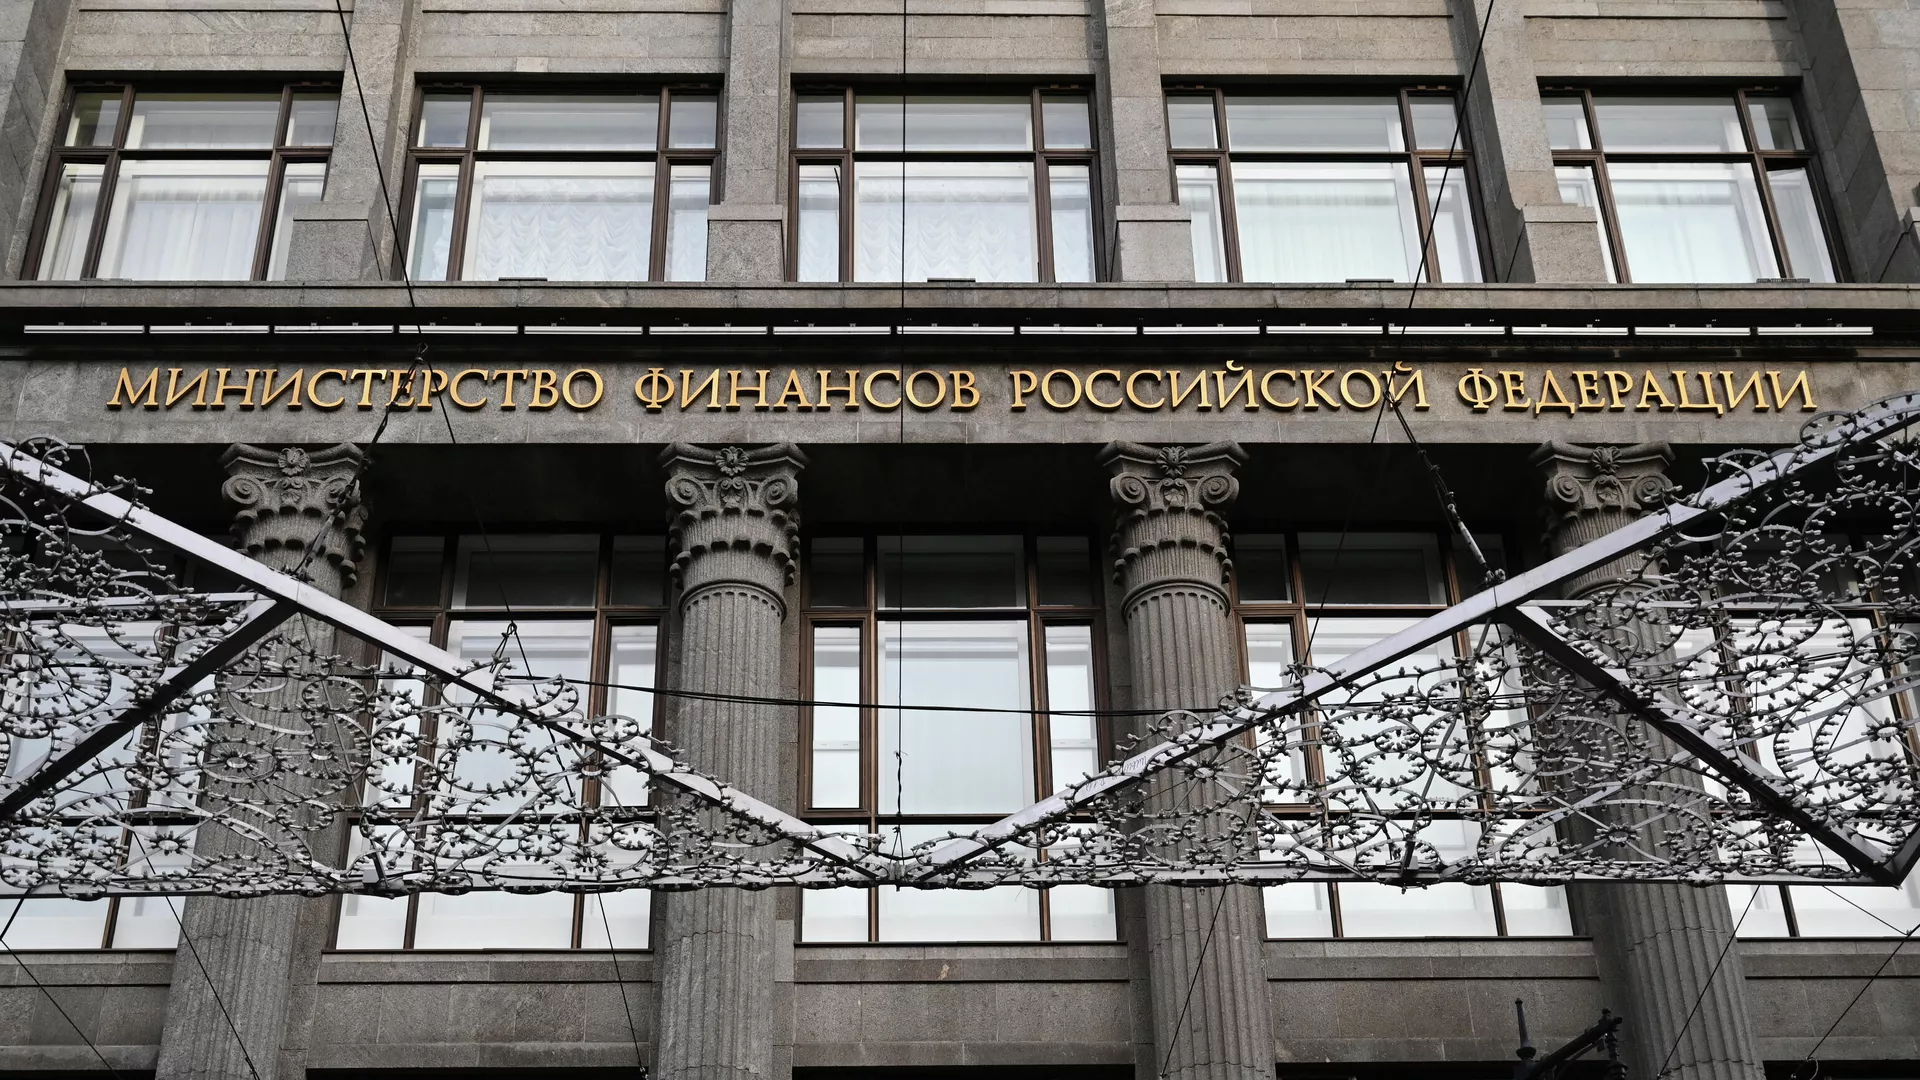 Порядка трех трлн рублей затратили на реализацию нацпроектов в России